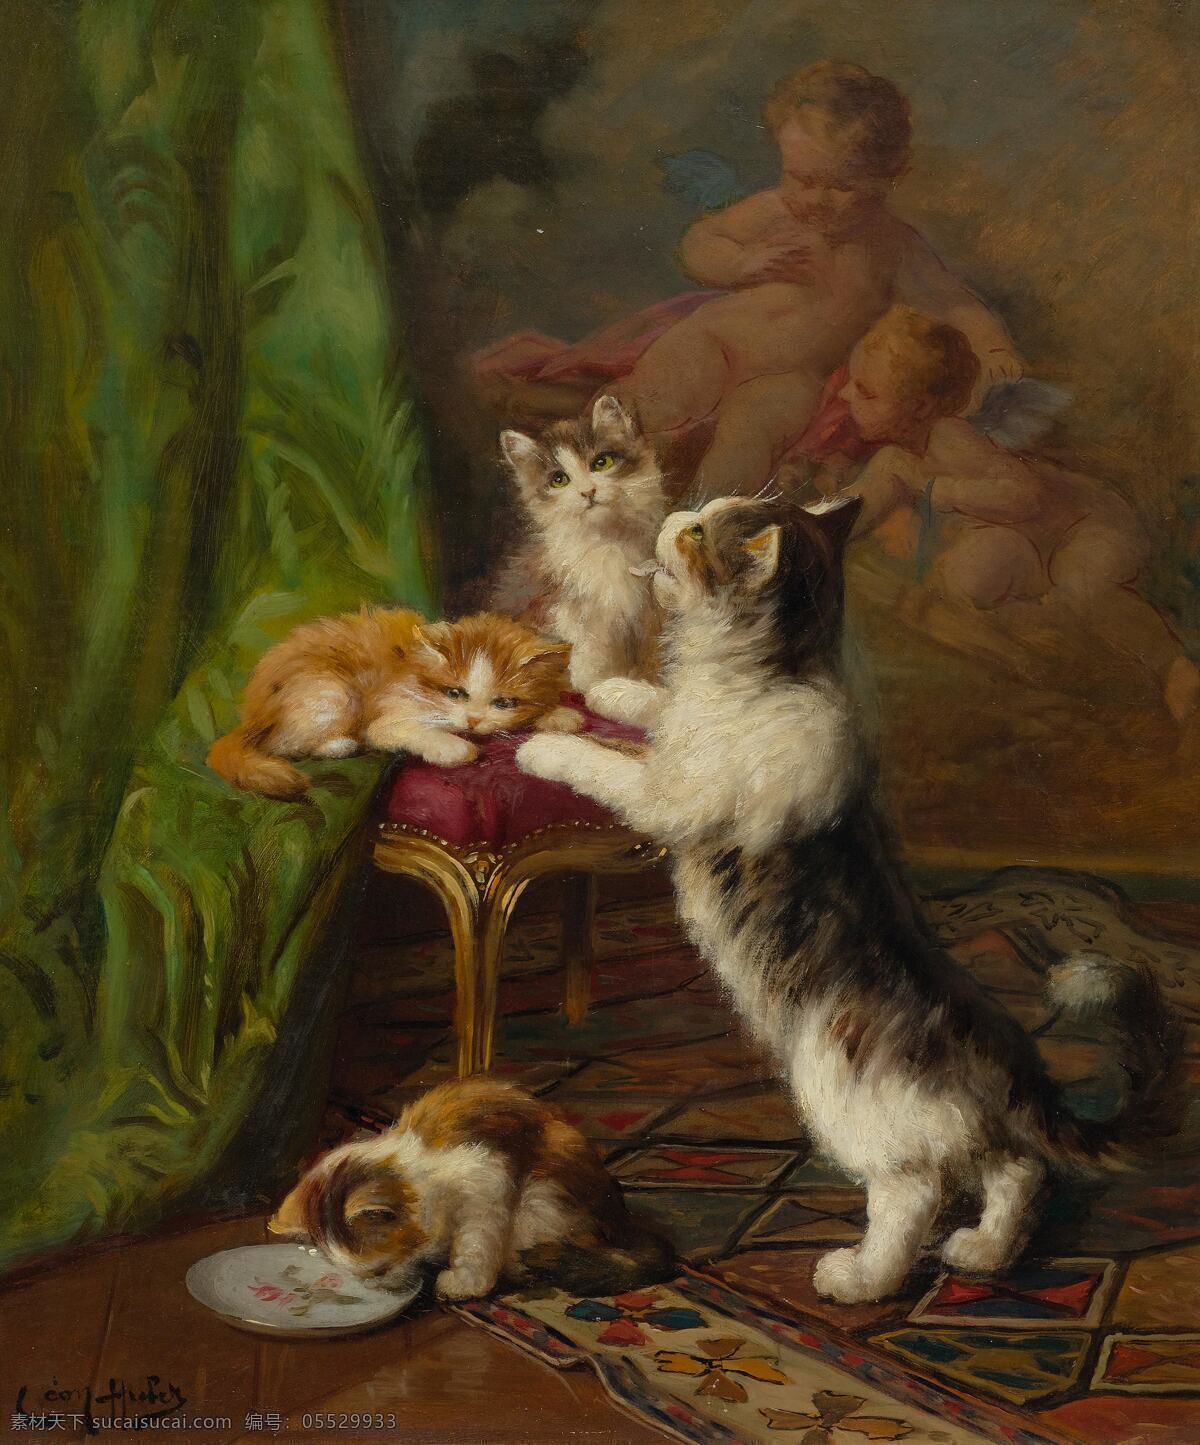 里昂 查理 斯 胡 贝尔 作品 法国画家 萌萌的小猫们 母猫 三只小猫儿 嬉戏 19世纪油画 油画 文化艺术 绘画书法